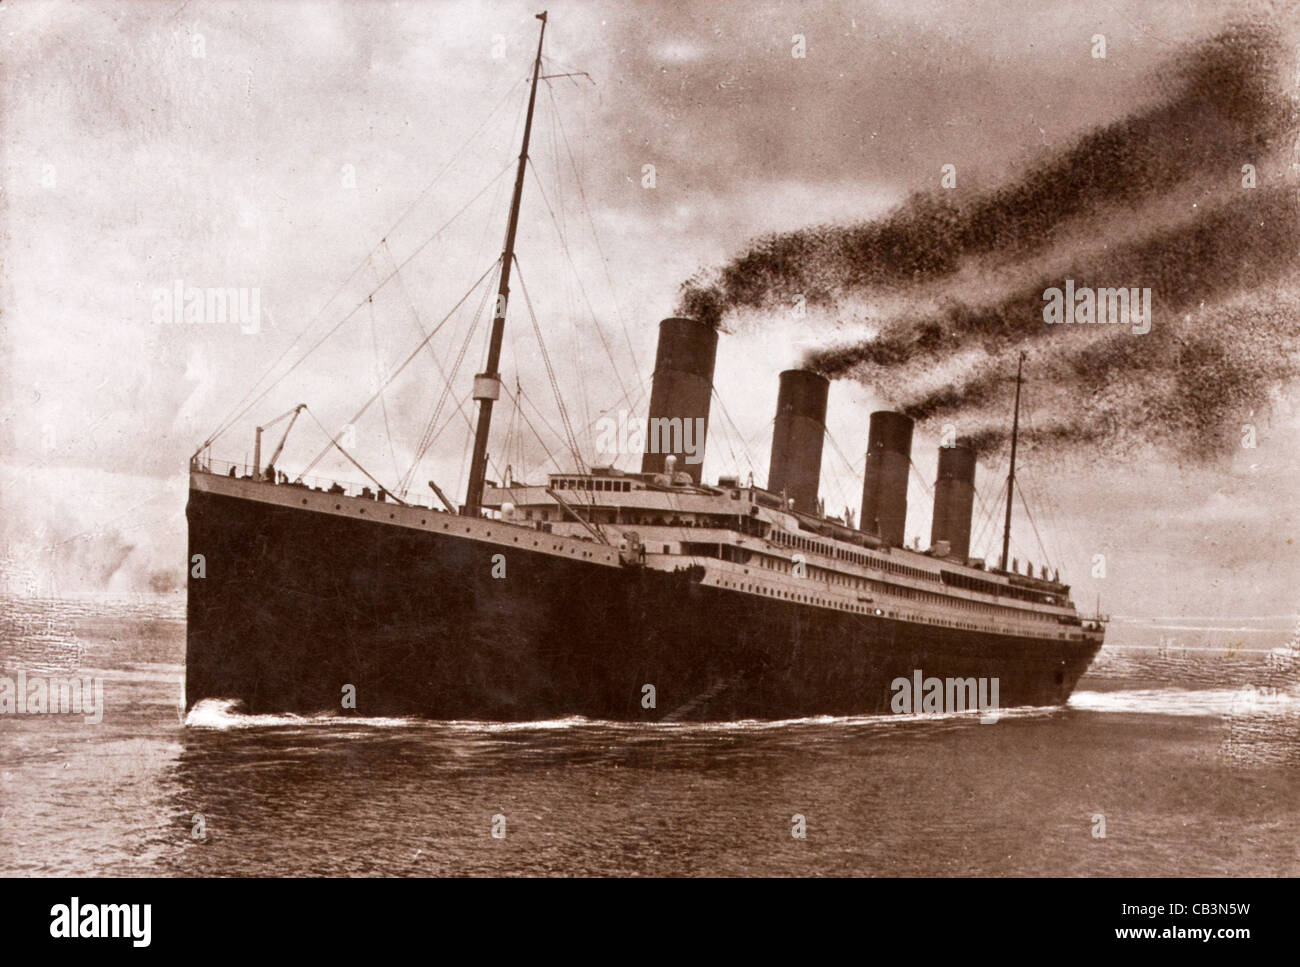 Photo du Titanic avec les paroles de plus près de toi, mon Dieu l'hymne au son de laquelle le Titanic a coulé Banque D'Images